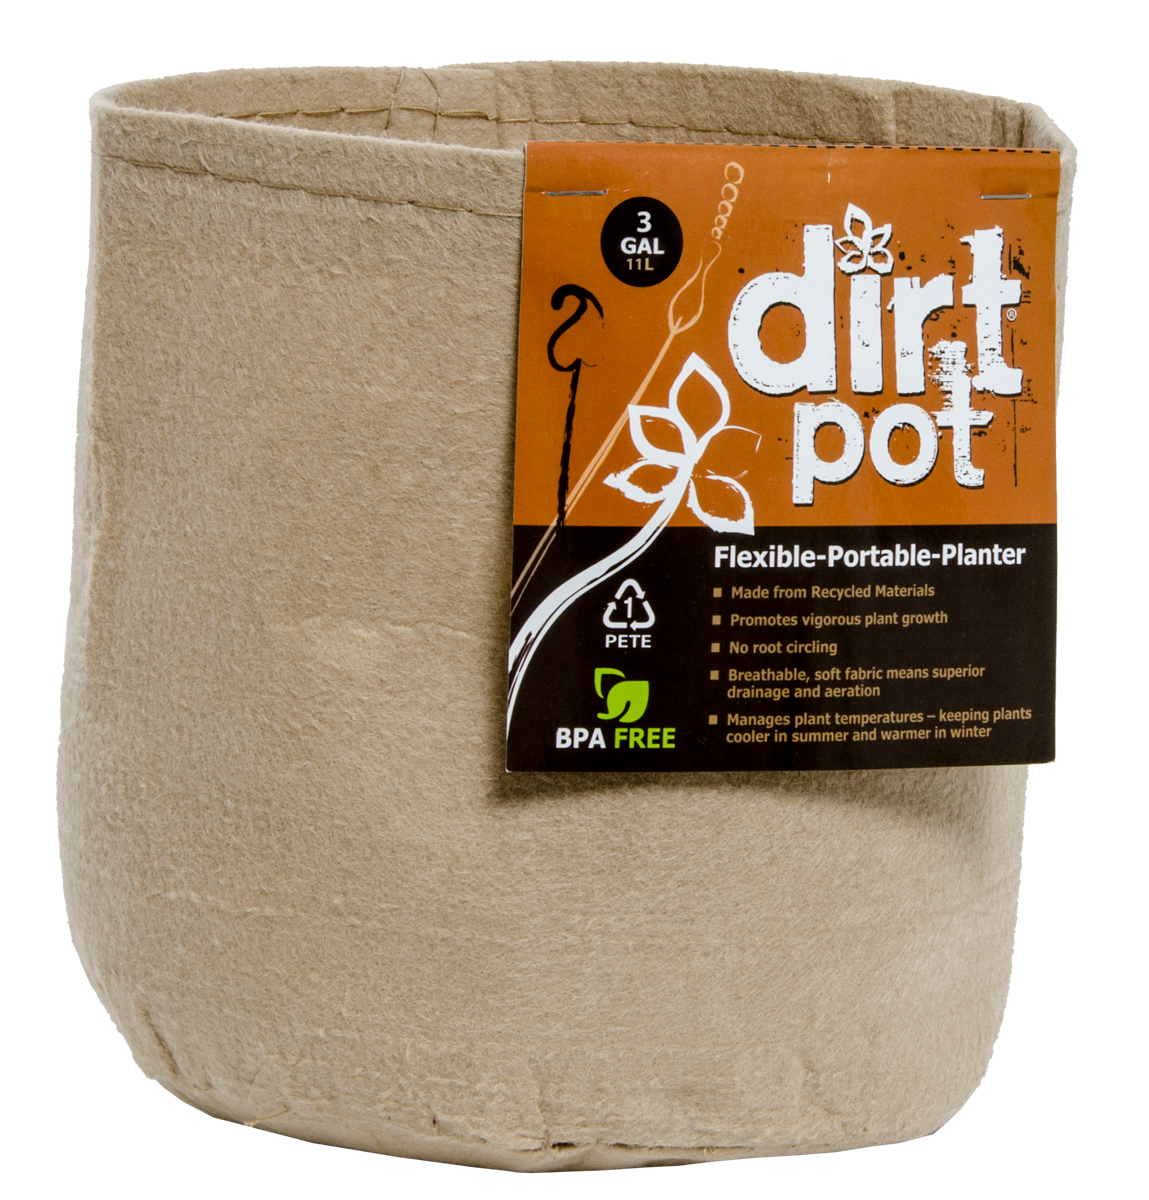 Dirt Pot Flexible Portable Planter, Tan, 3 gal, no handles HGDBT3